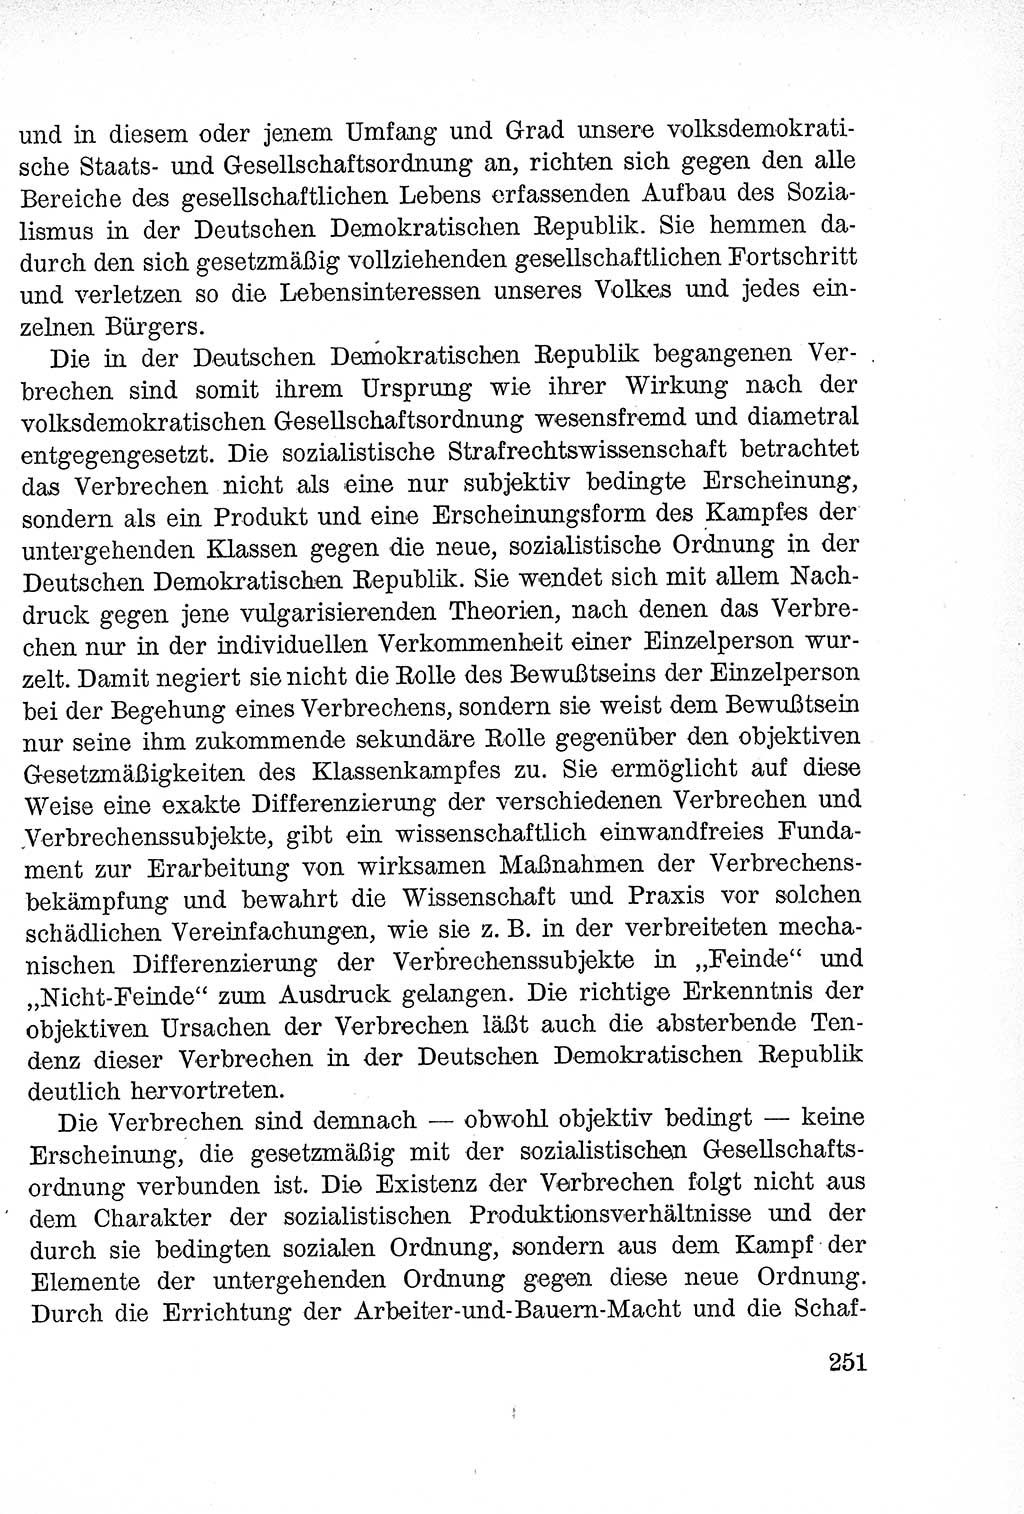 Lehrbuch des Strafrechts der Deutschen Demokratischen Republik (DDR), Allgemeiner Teil 1957, Seite 251 (Lb. Strafr. DDR AT 1957, S. 251)